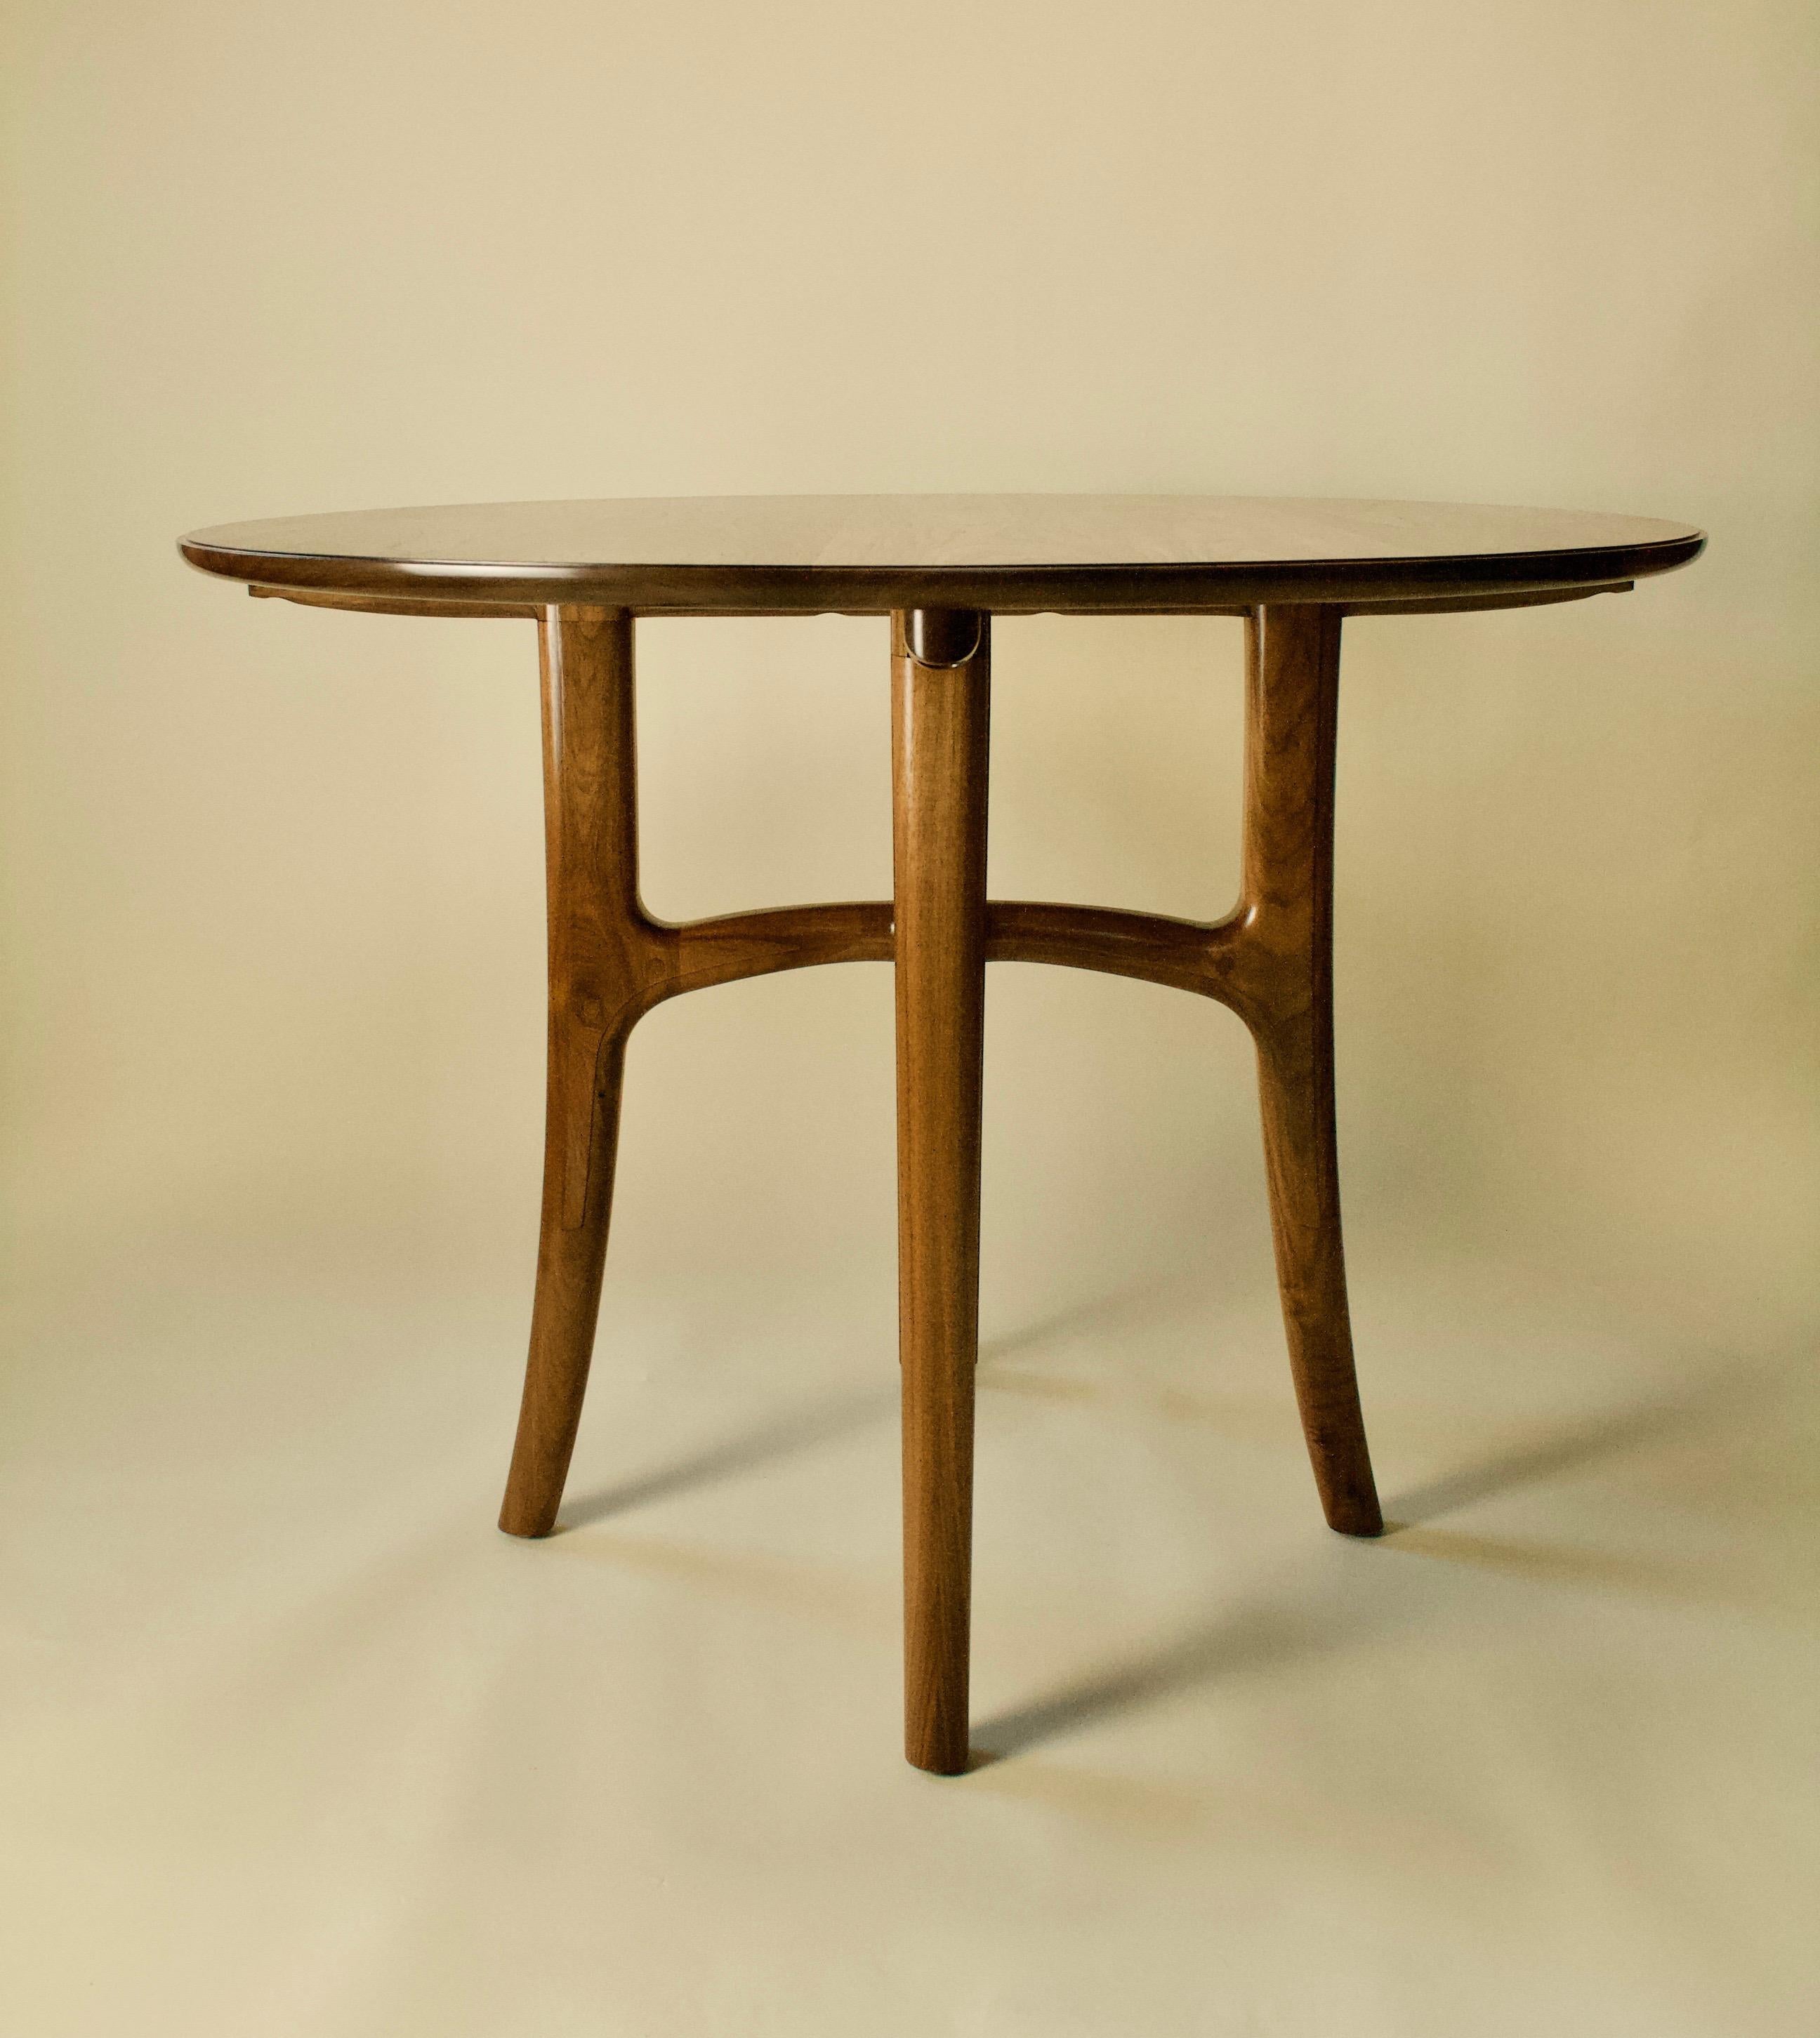 TABLEAU DES OISEAUX  Salle à manger, foyer, entrée

Les meubles artisanaux de Kenton Jeske woodworker sont fabriqués selon les normes les plus strictes en matière d'artisanat, de matériaux et de finition. Le design sculptural et sensuel, associé à